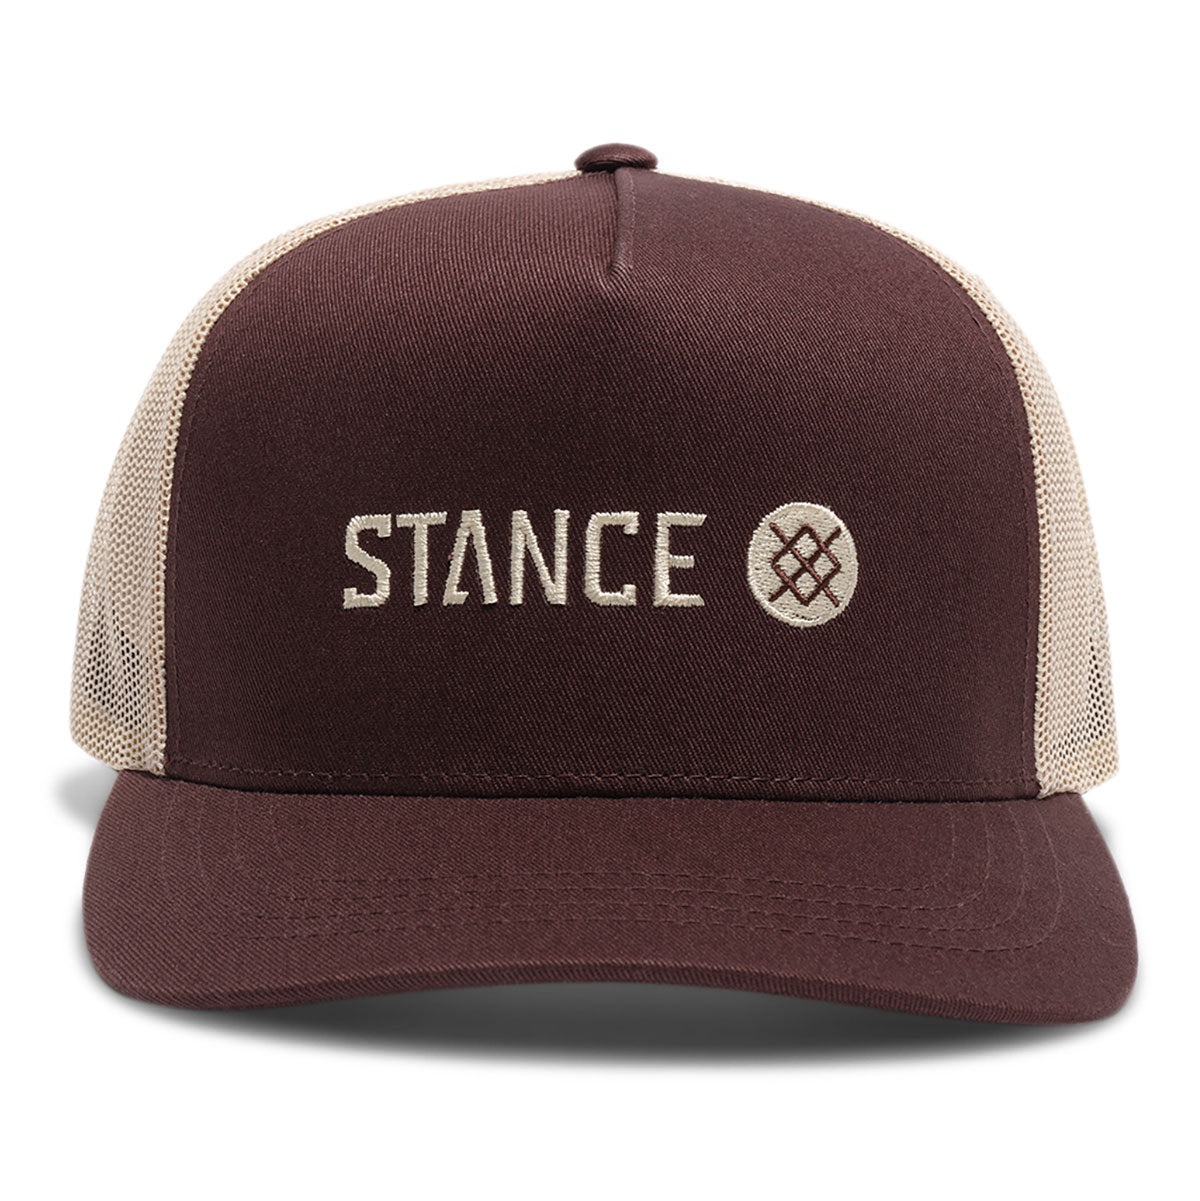 Stance Icon Trucker Hat - Dark Brown image 2